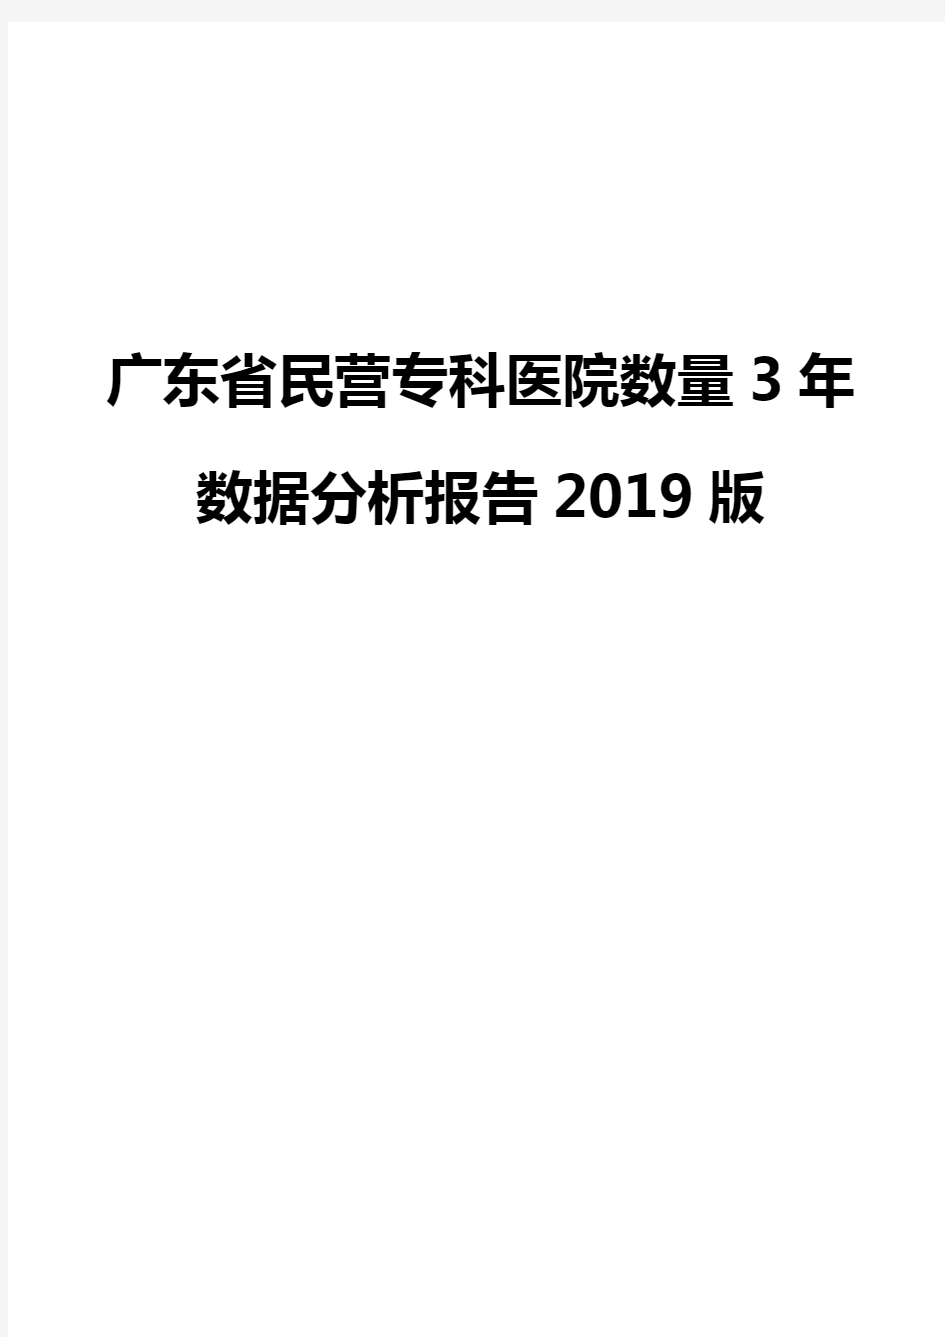 广东省民营专科医院数量3年数据分析报告2019版